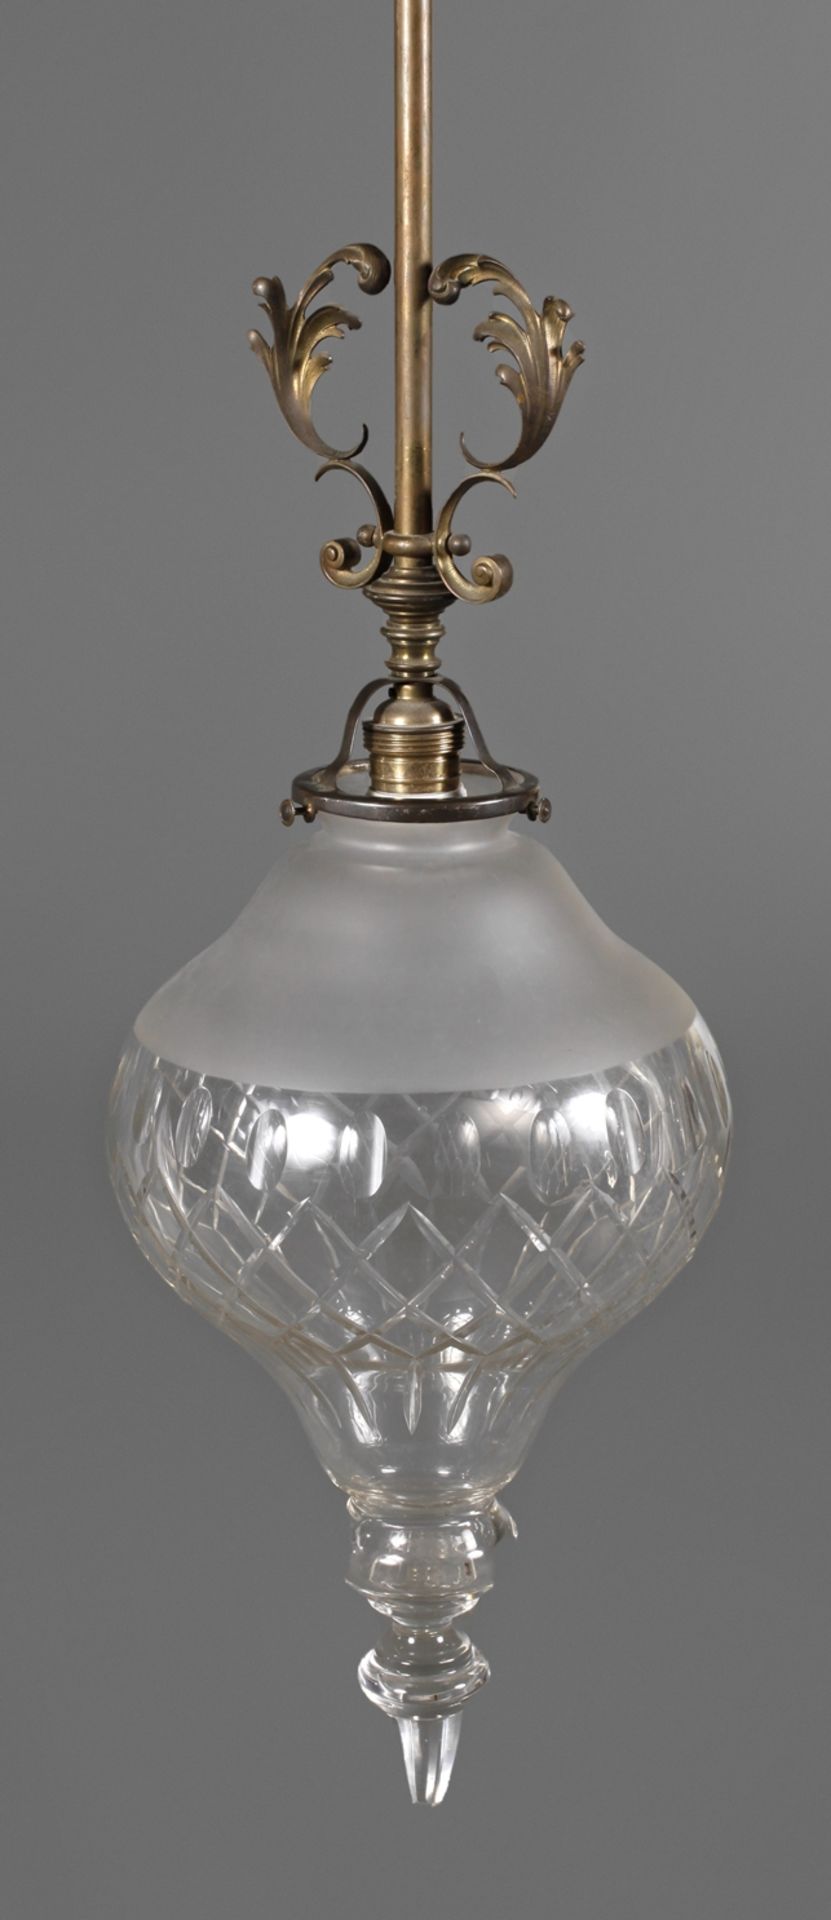 Deckenlampeum 1900, zartes Messinggestänge mit zurückgenommenem Blattdekor, abgehängte Lampenfassung